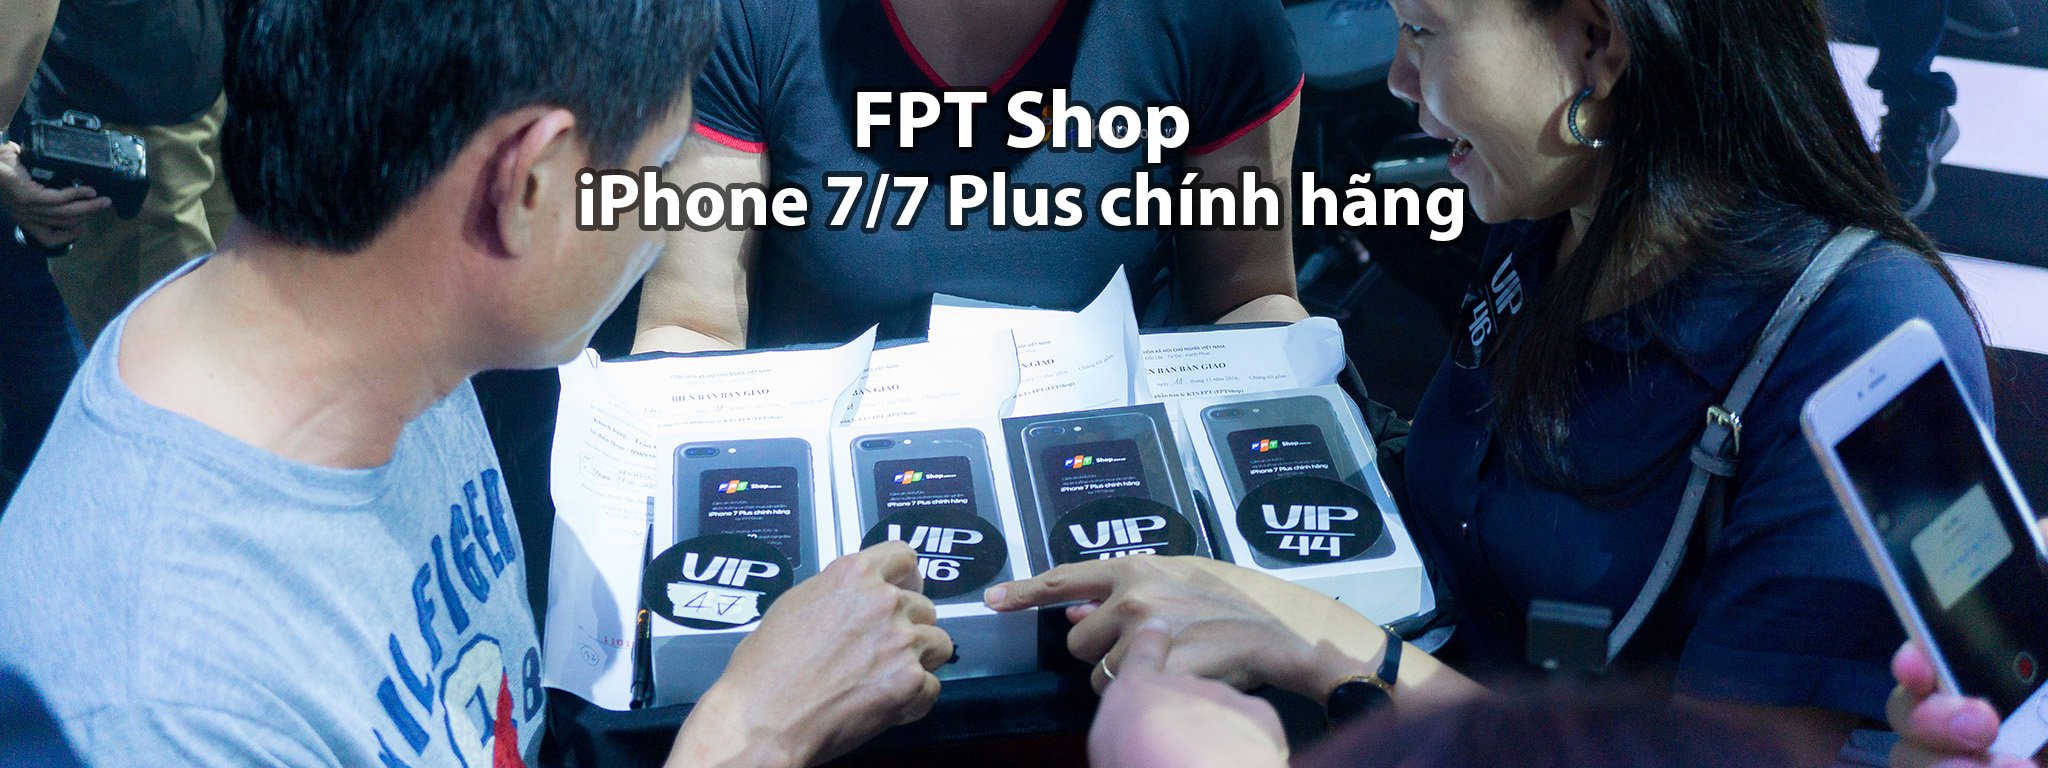 FPT Shop mở bán iPhone 7/7 Plus chính hãng từ 11/11, giá từ 18.790.000 đồng